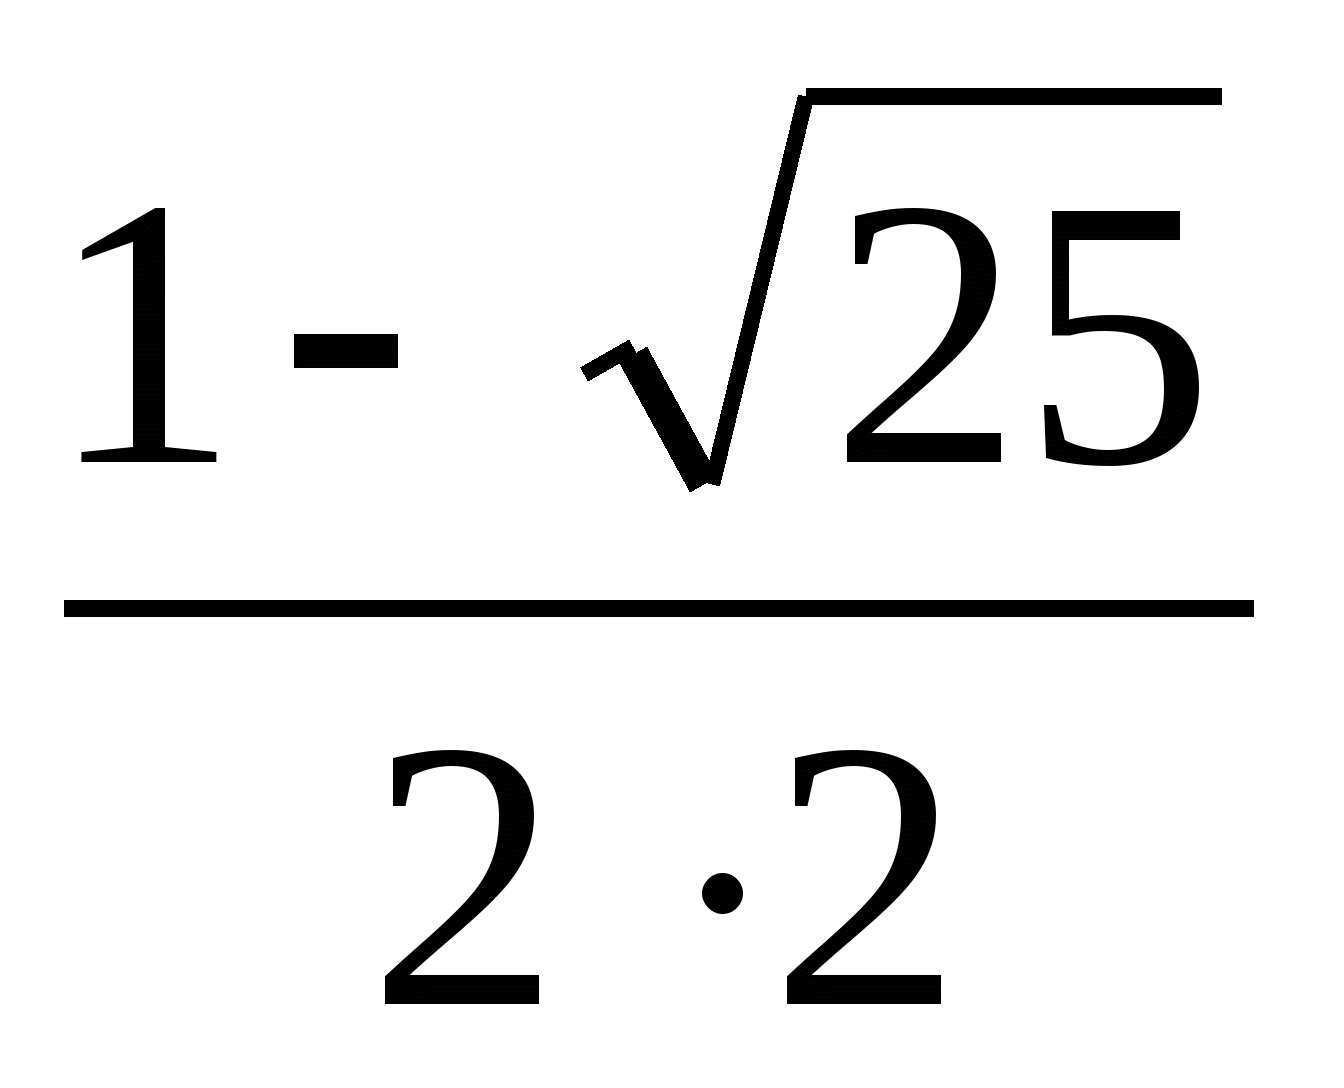 Конспект по математике на тему Тригонометрические уравнения (10 класс)